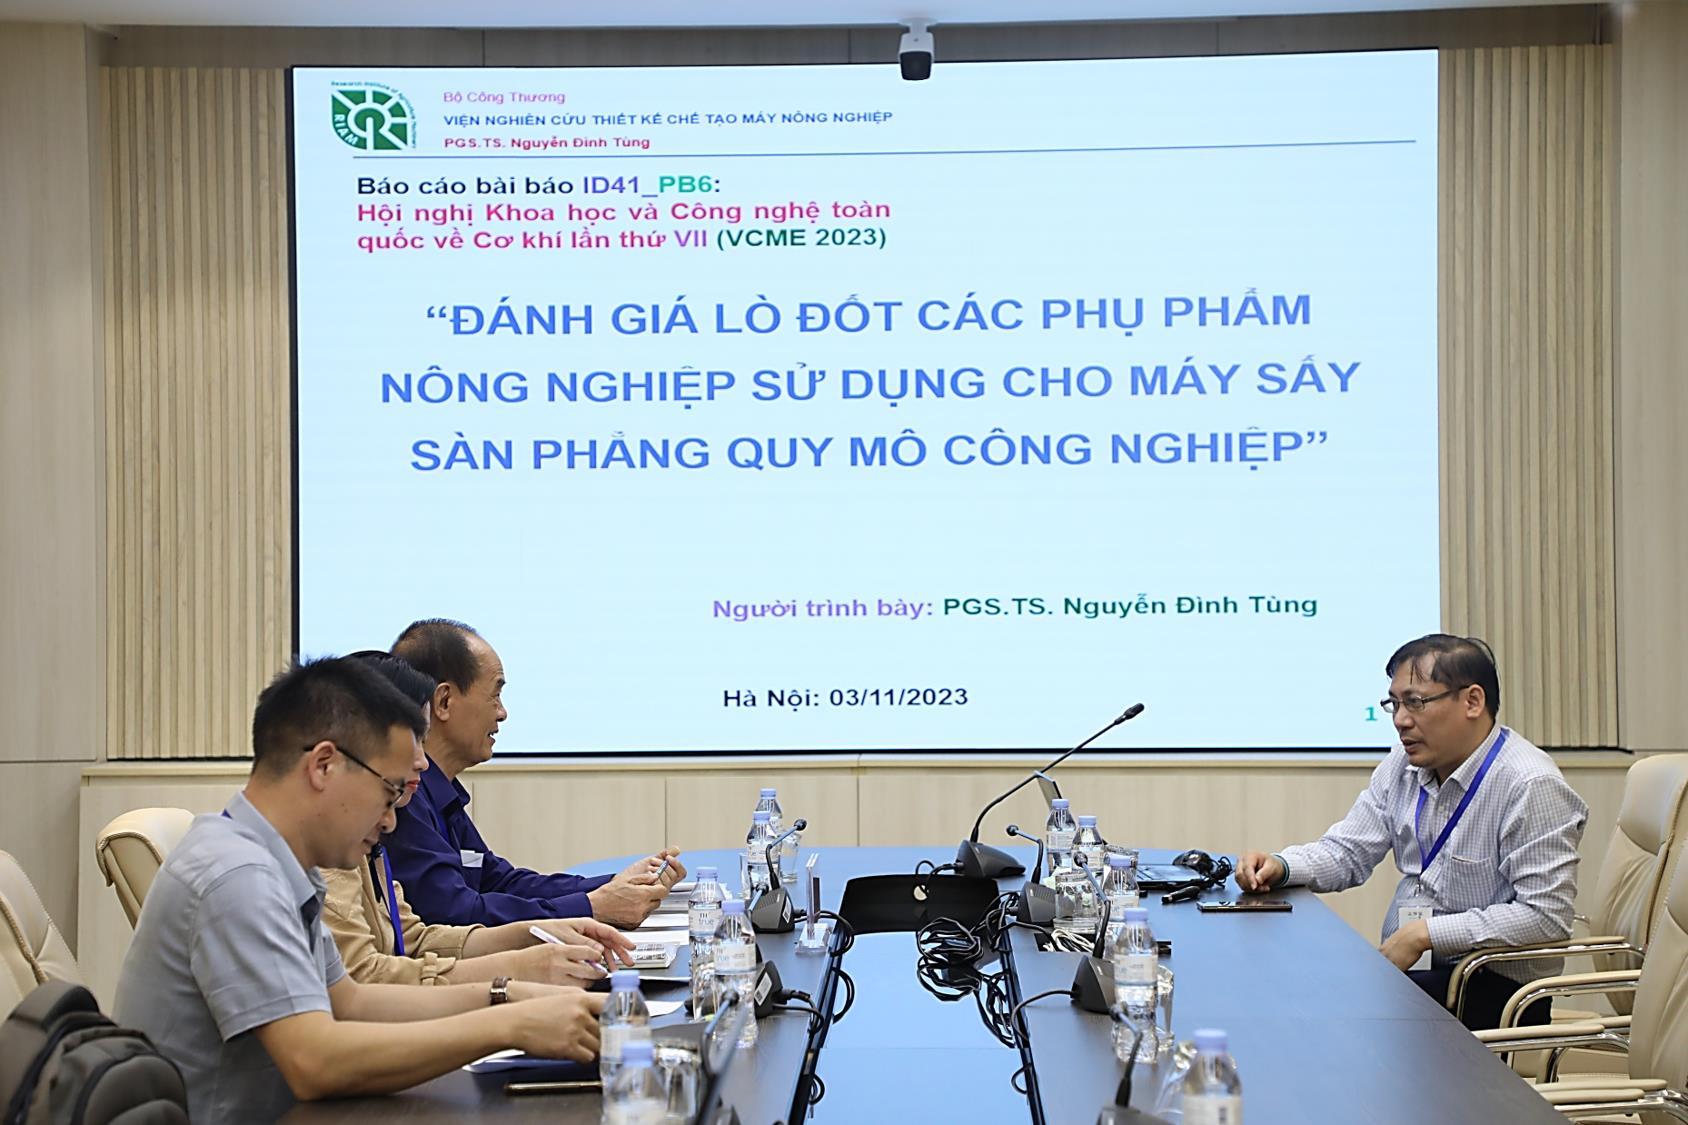 Tổng hội Cơ khí Việt Nam và Trường Đại học Công nghiệp Hà Nội tổ chức Hội nghị Khoa học và Công nghệ toàn quốc về Cơ khí lần thứ VII